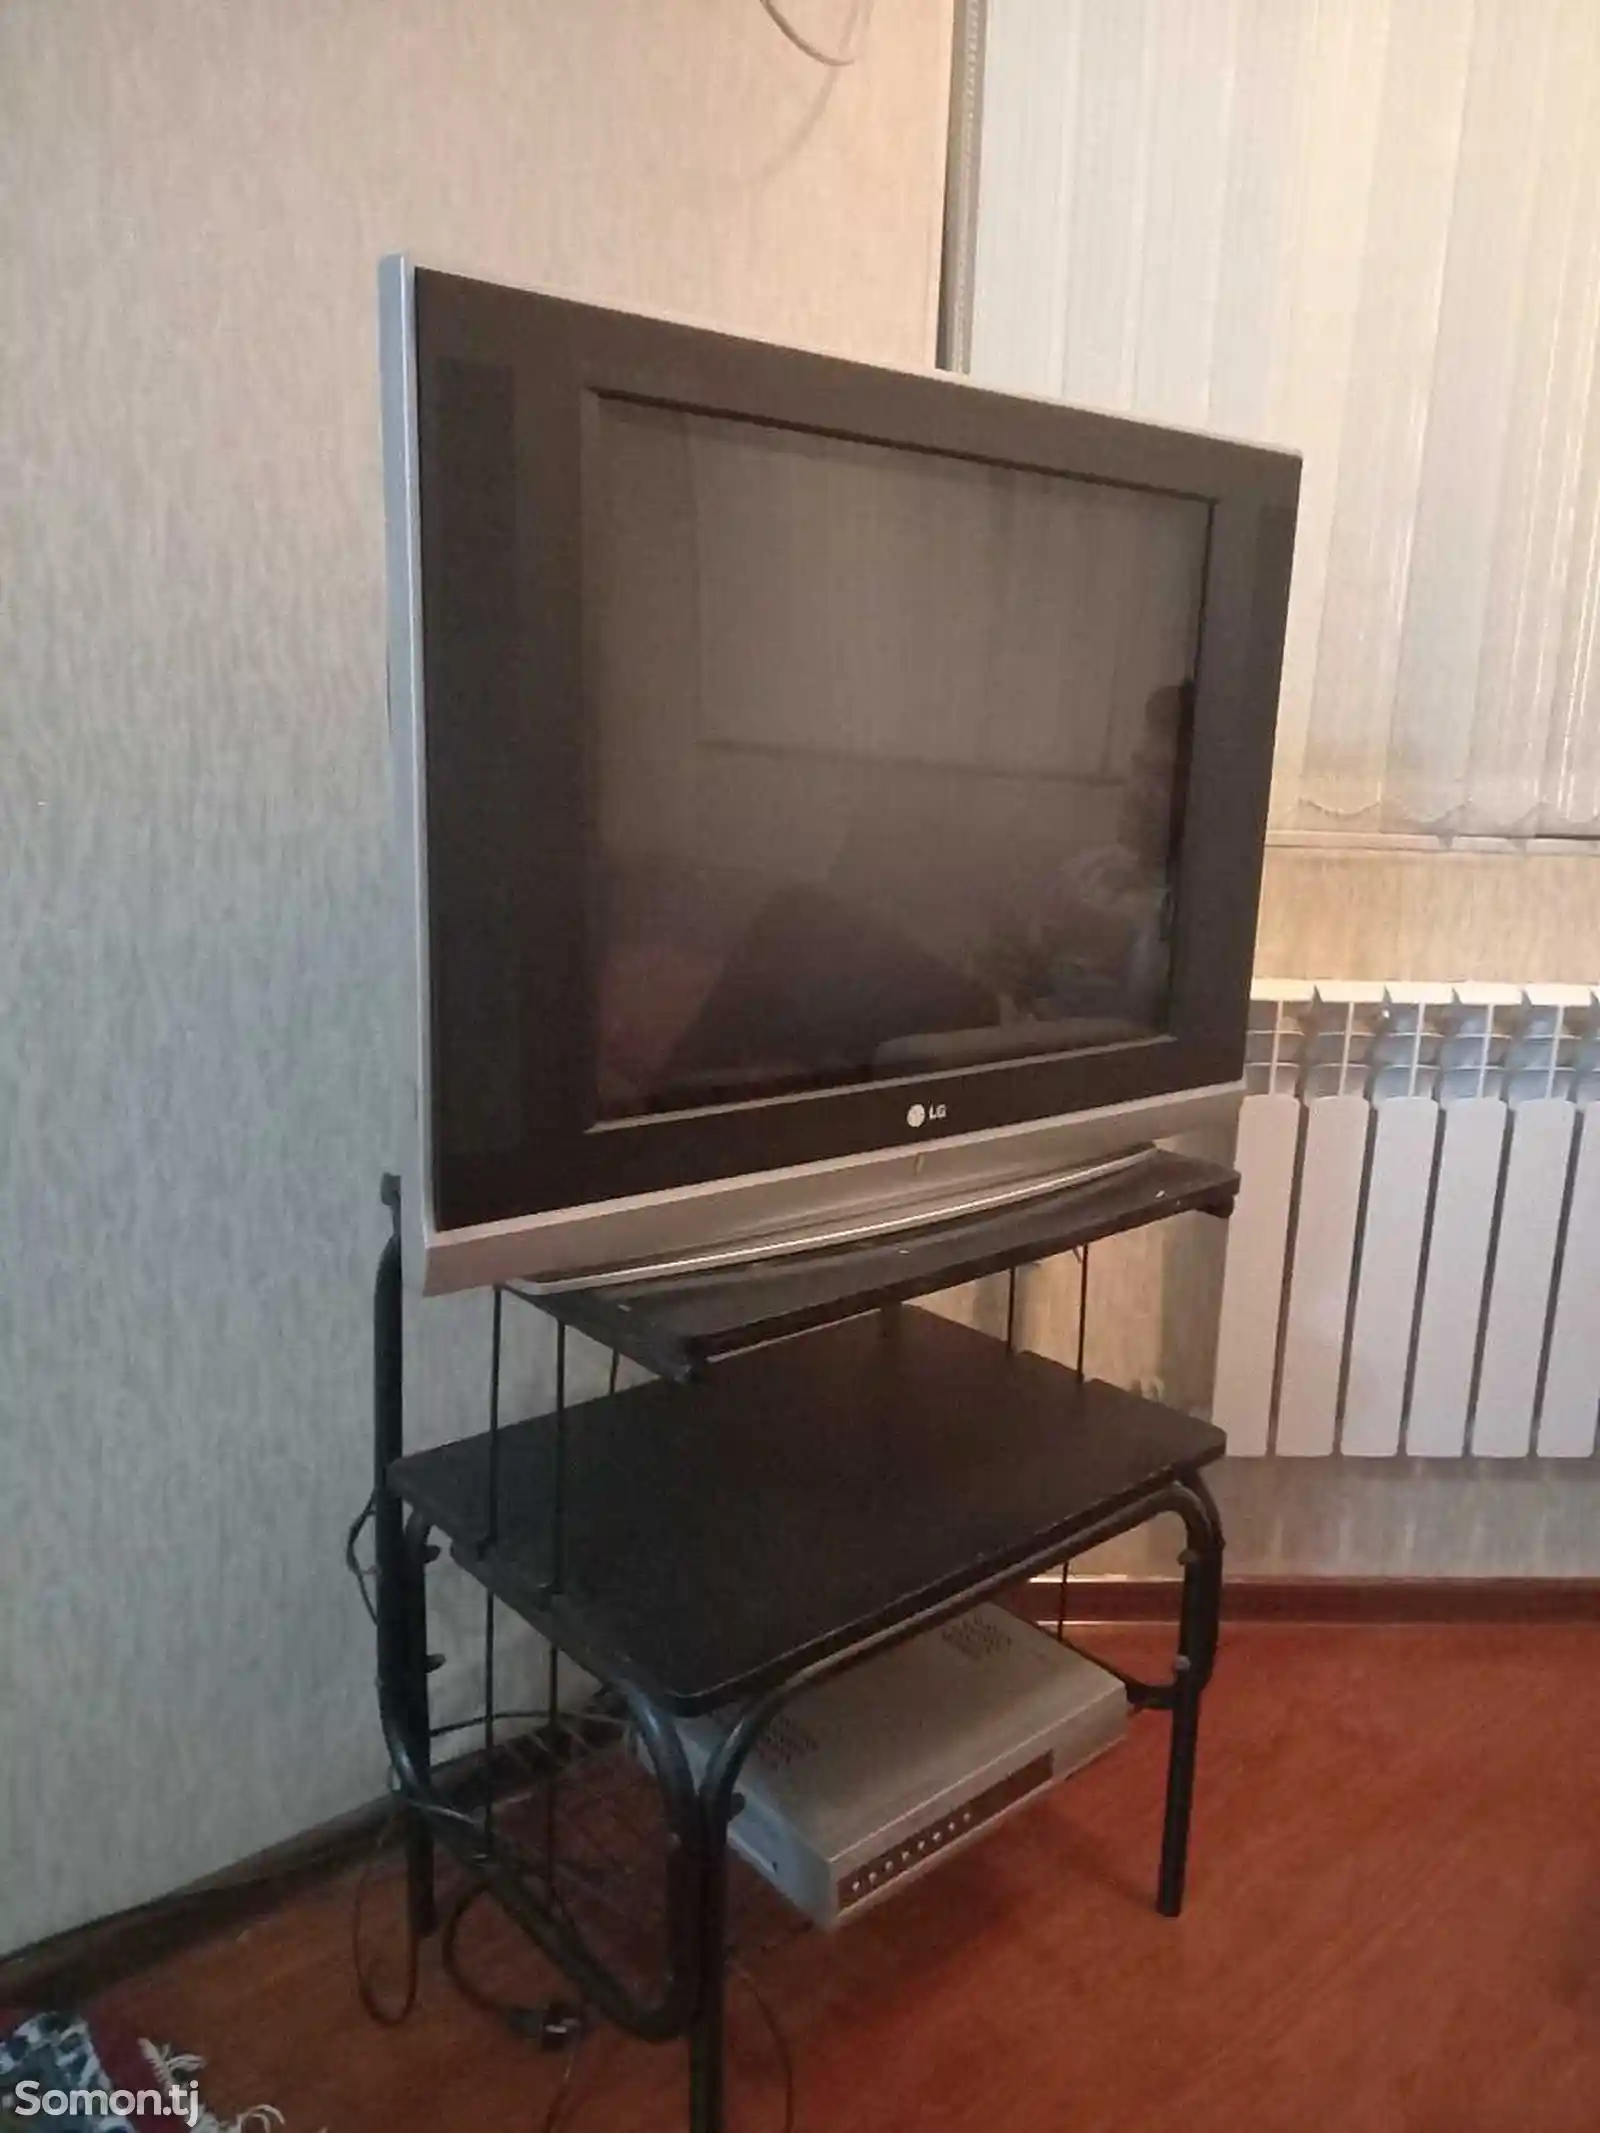 Телевизор LG с подставкой и ресивером